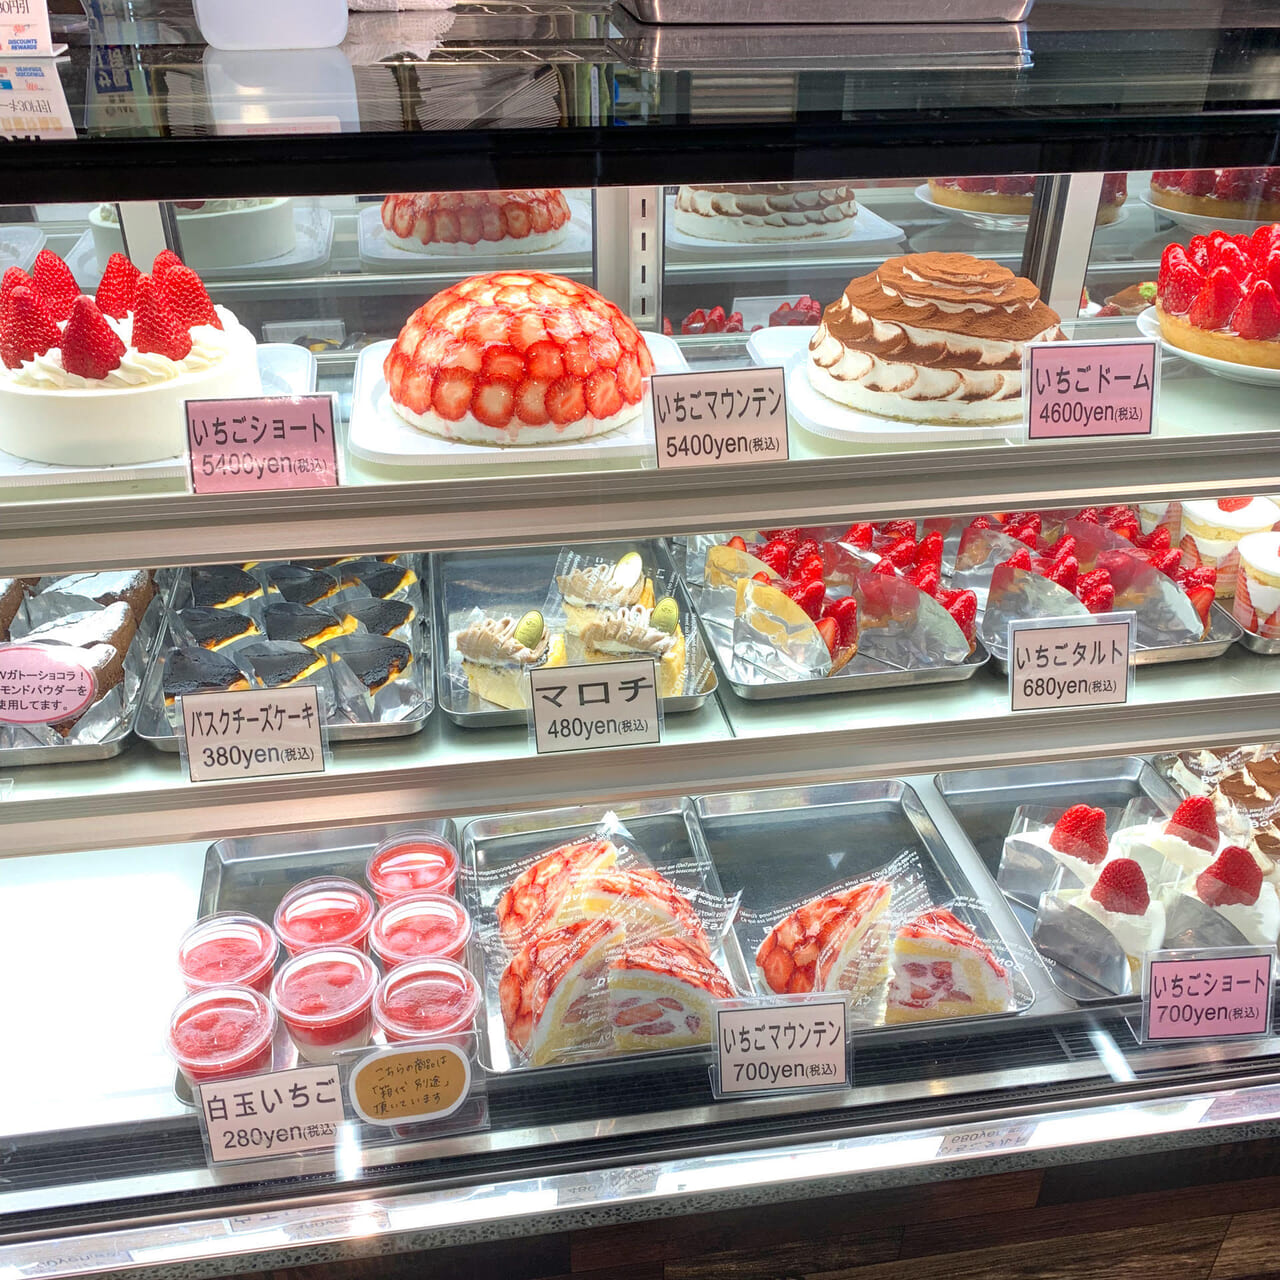 イオンモール新都市内にあるSAI&Co. (サイコー)では美味しいデザートや地元の食材を購入できます!